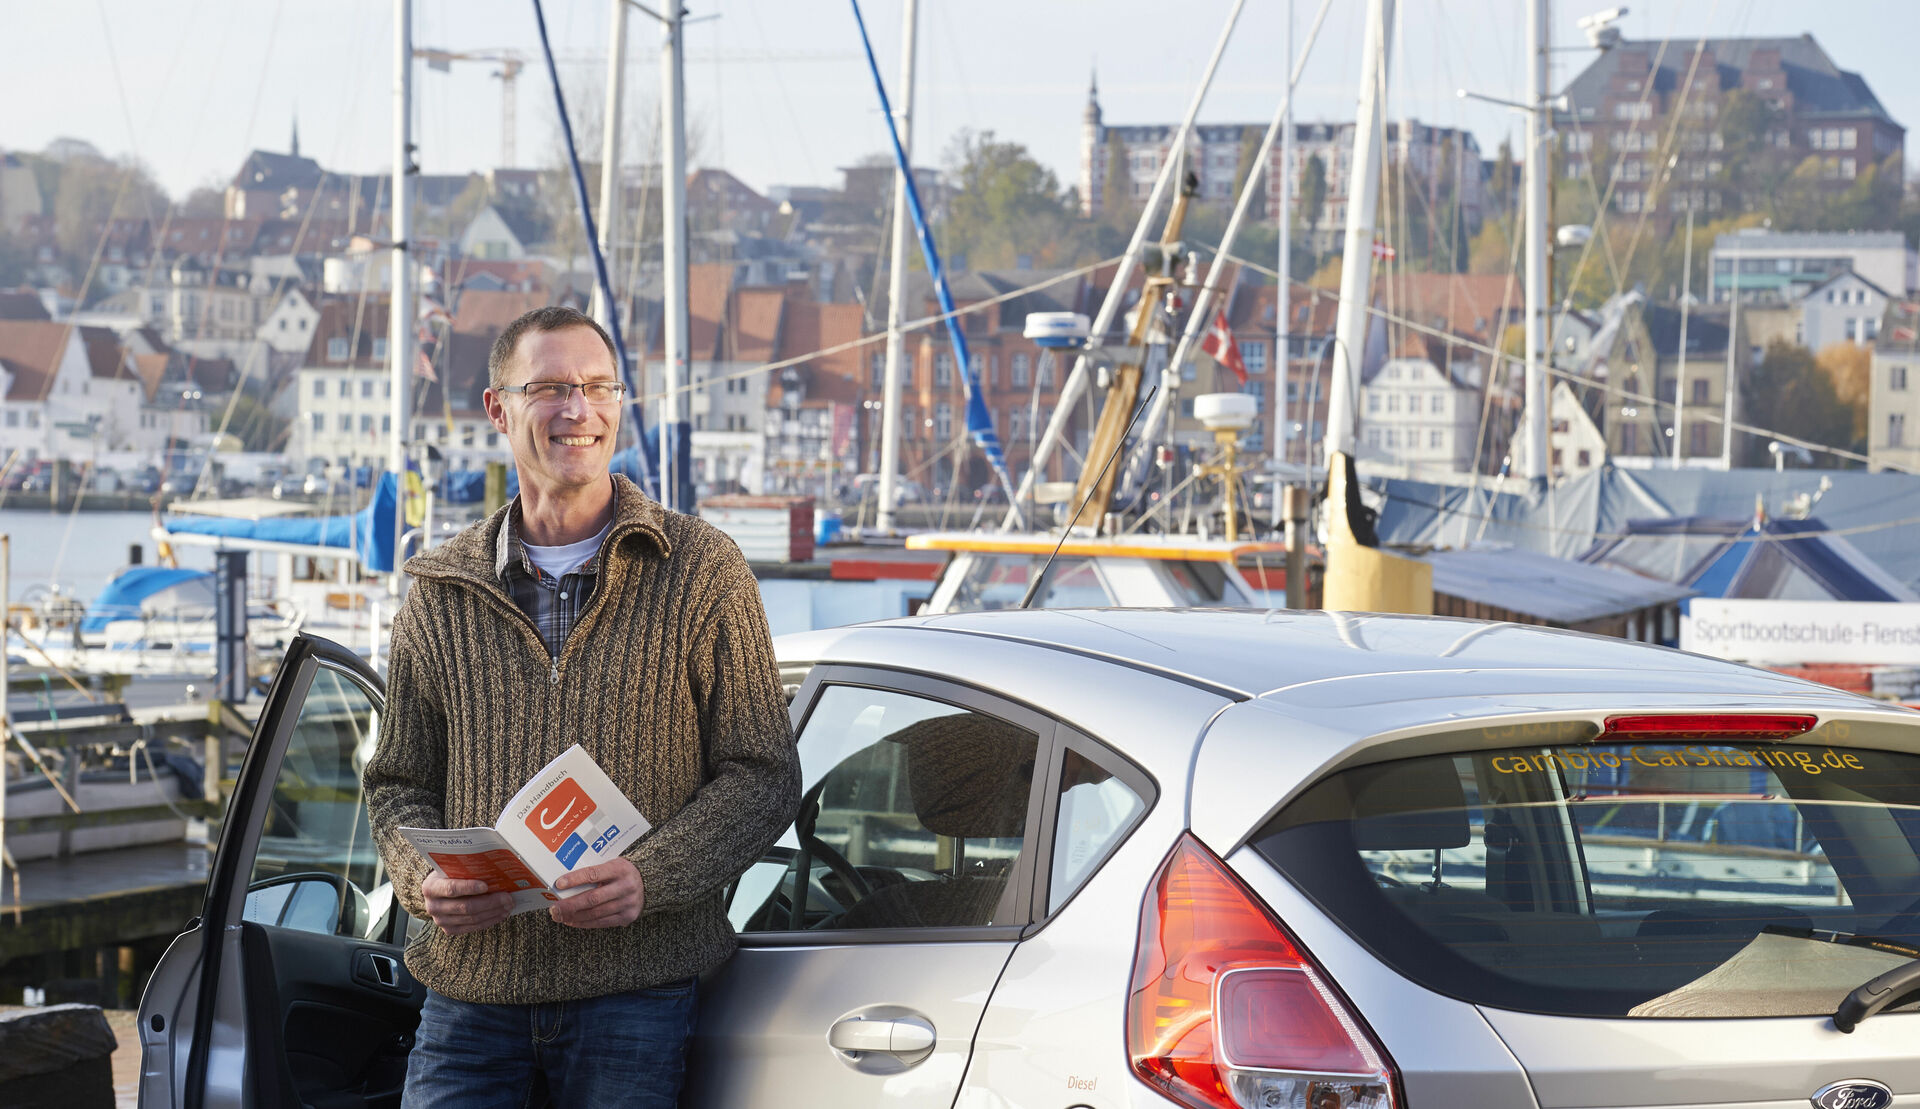 Mann steht mit einem cambio-Flyer lächelnd vor einem silbernen Auto. Im Hintergrund sieht man eine Hafenstadt